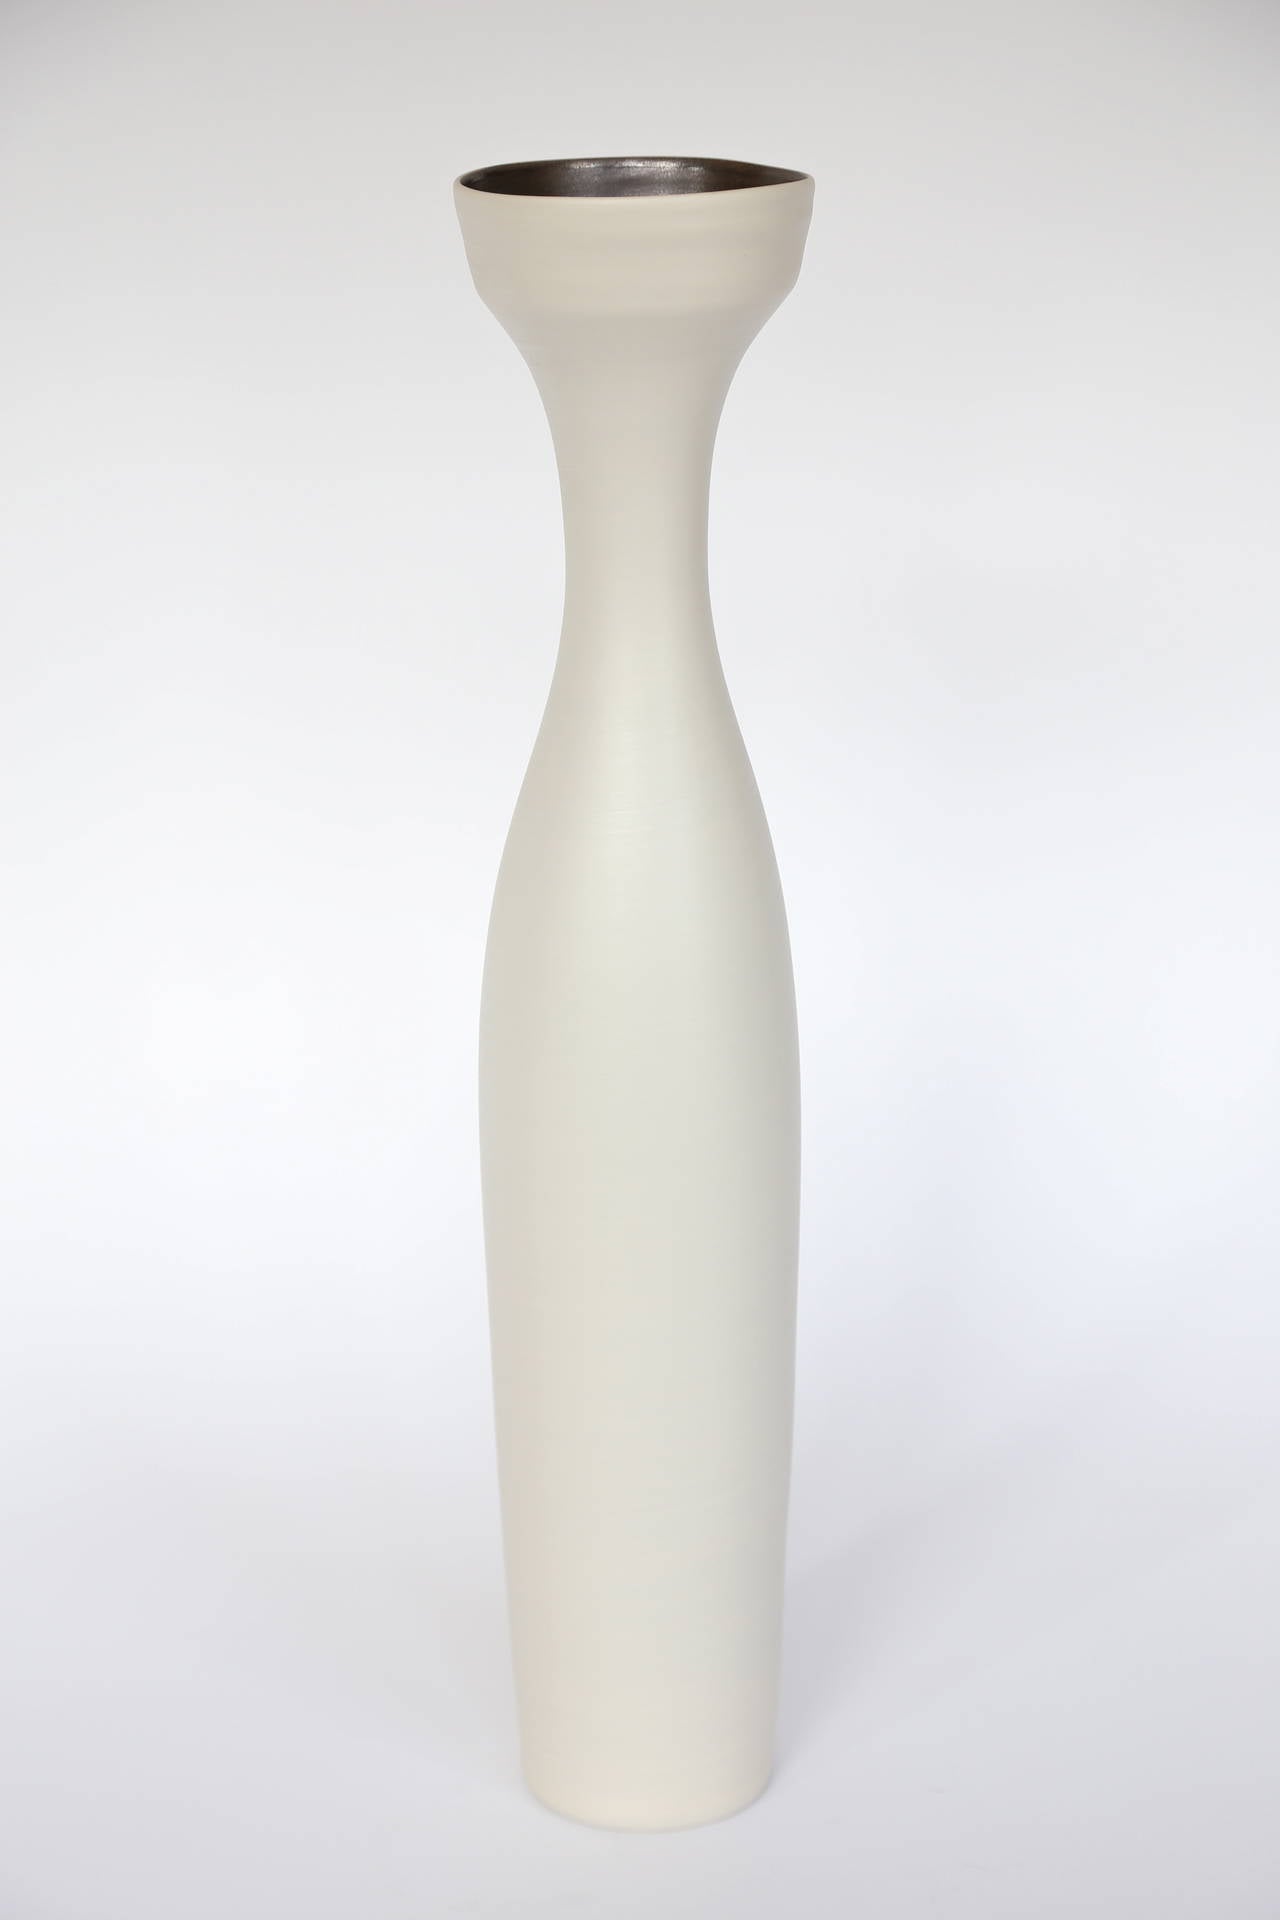 handmade ceramic vases for sale